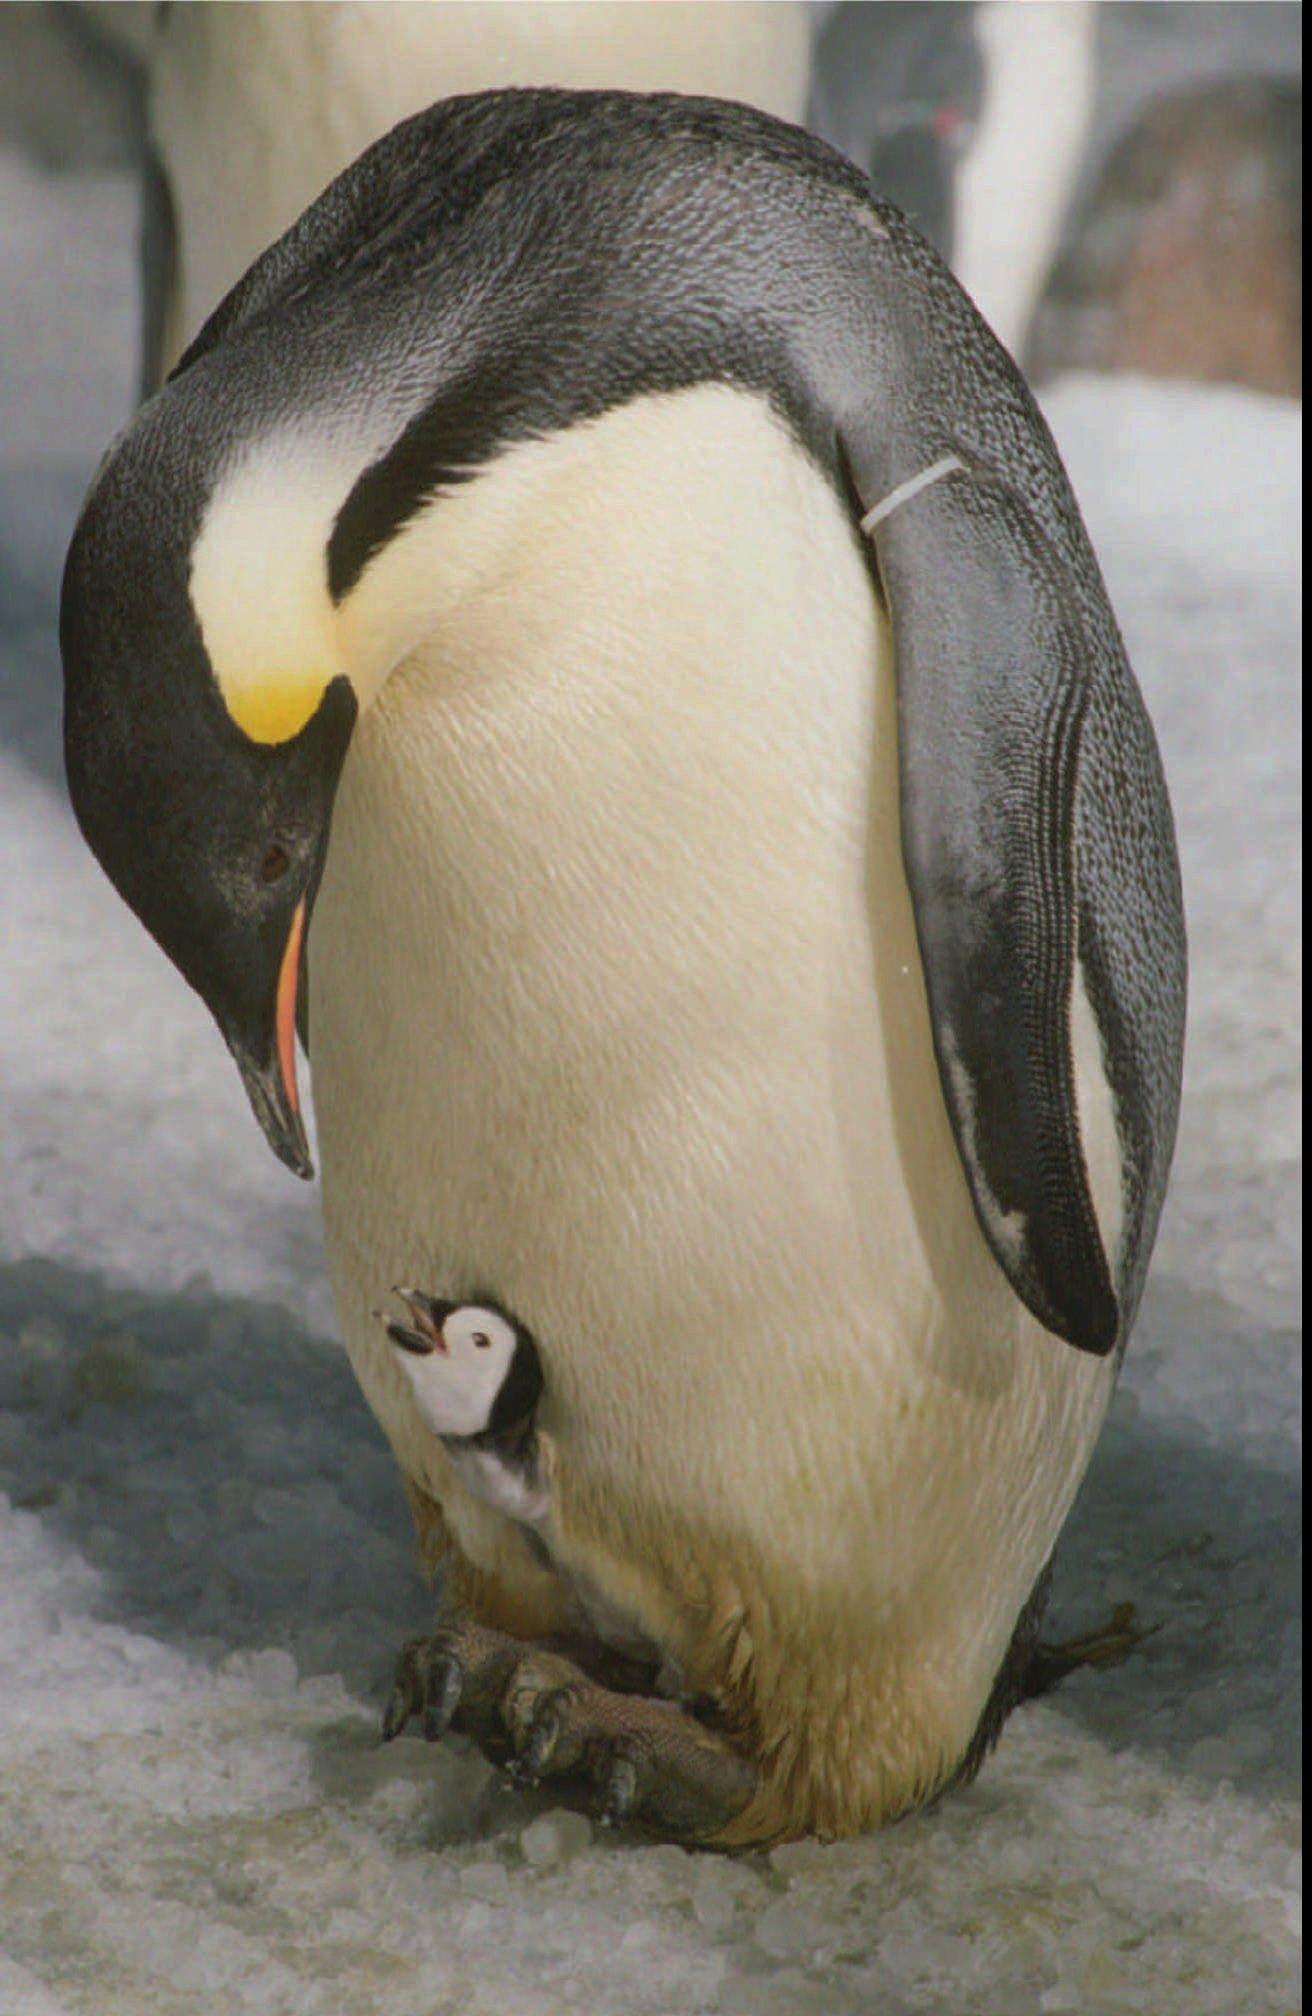 Kejsarpingvinen är världens största pingvin, men är mycket hotad av klimatförändringar. Arkivbild.